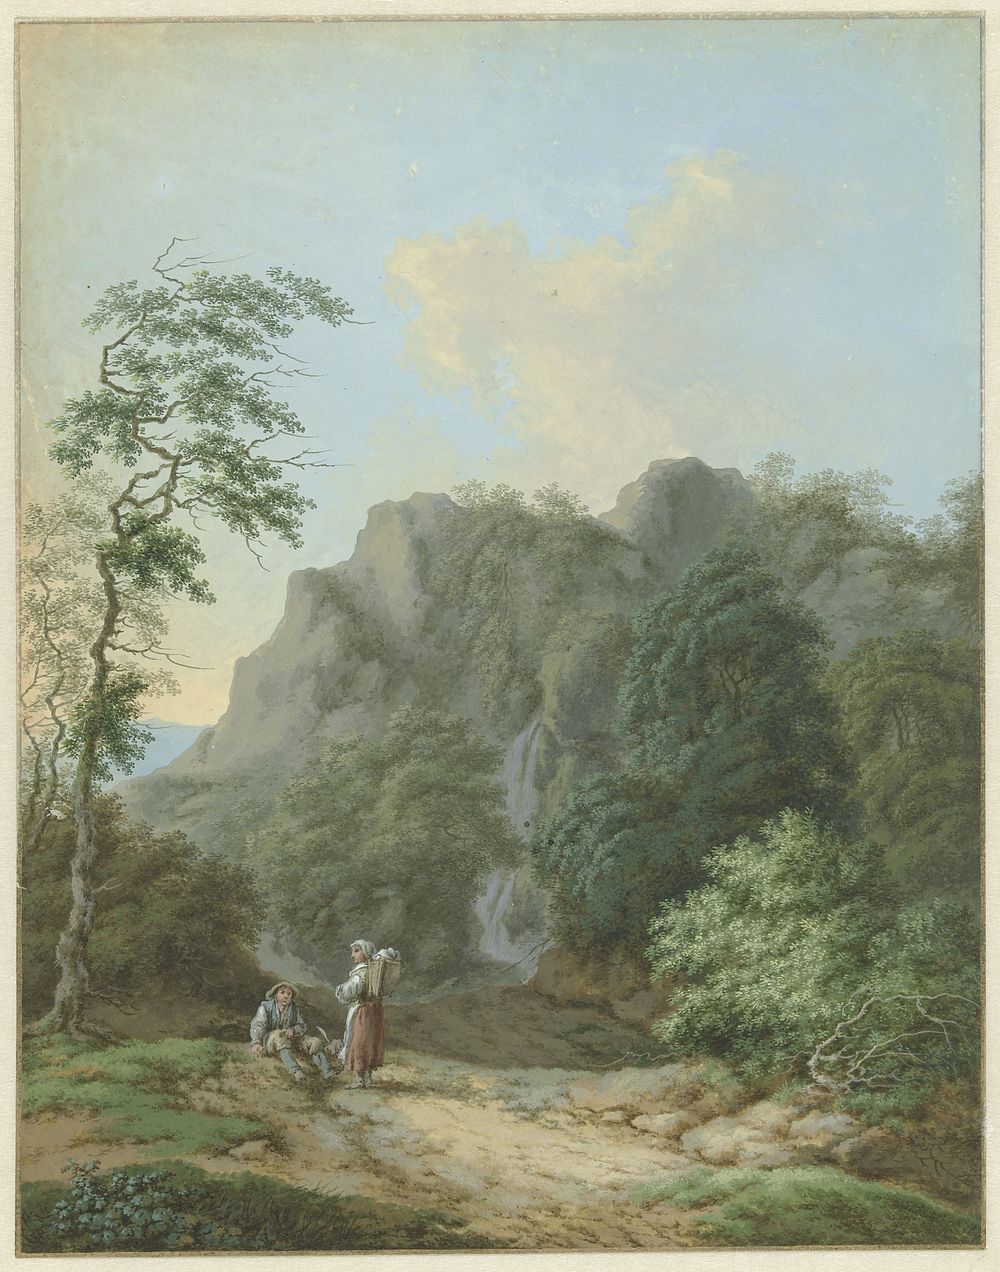 Landschap met zittende man en staande vrouw (1700 - 1800) by Monogrammist FWH and anonymous